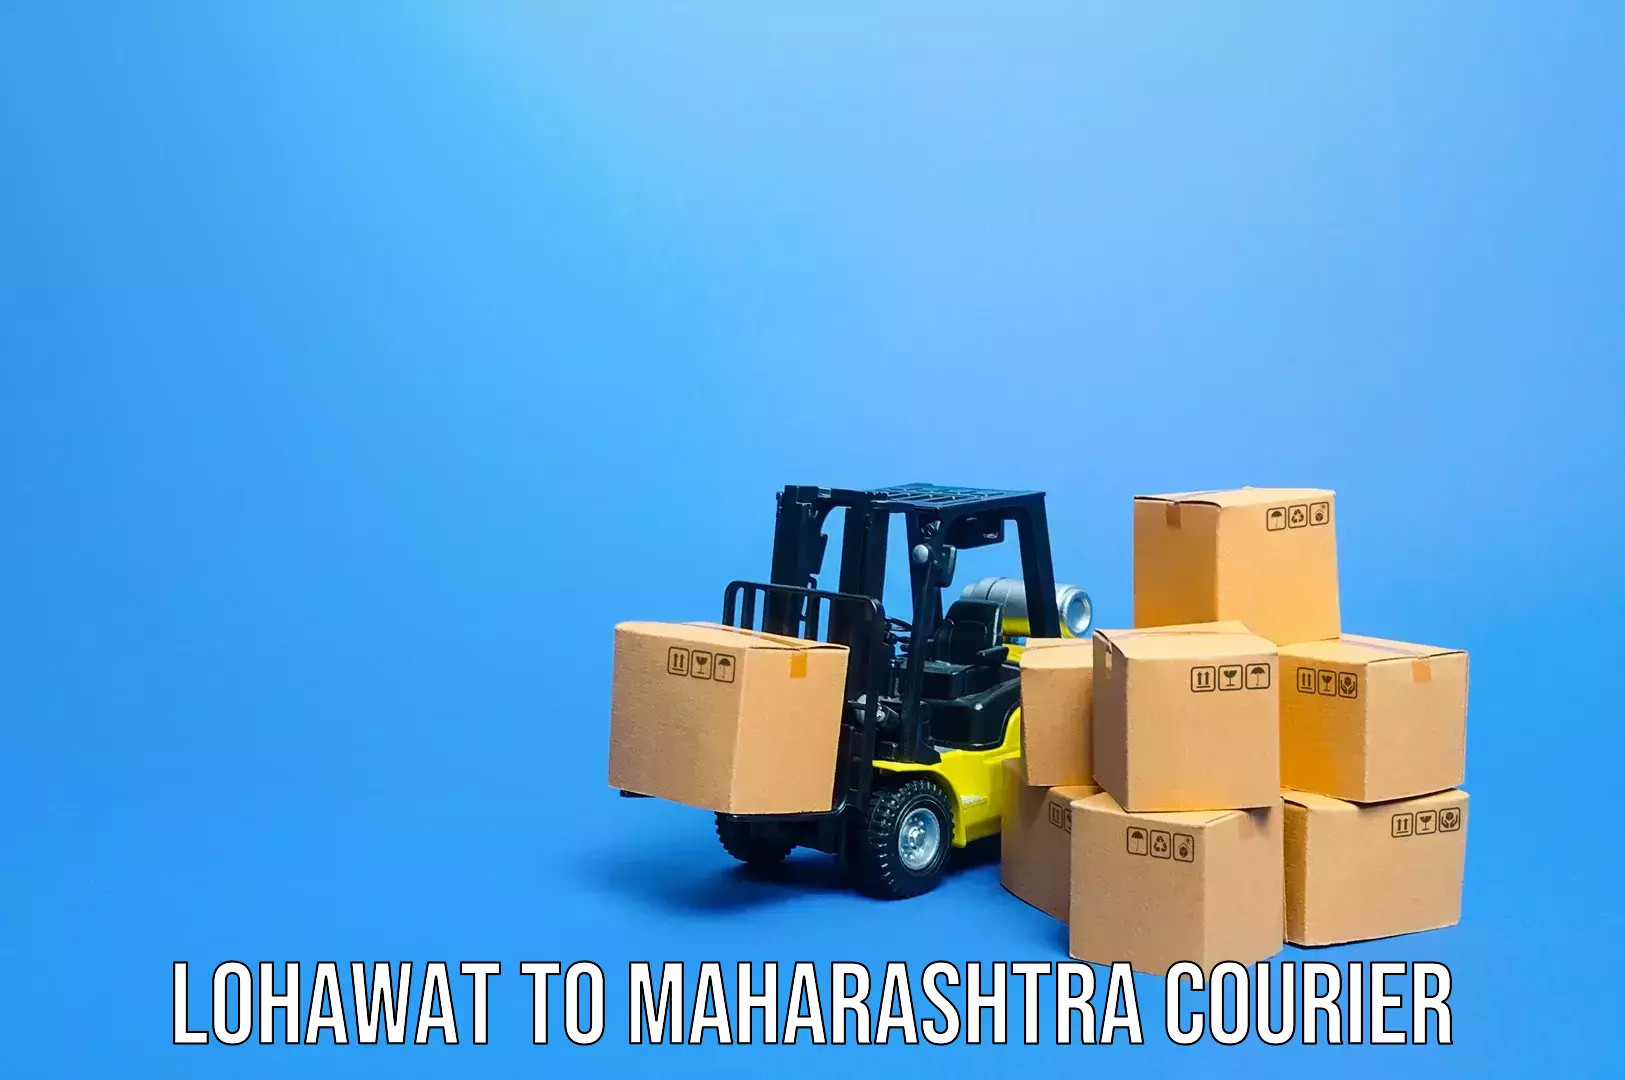 Baggage relocation service Lohawat to Maharashtra